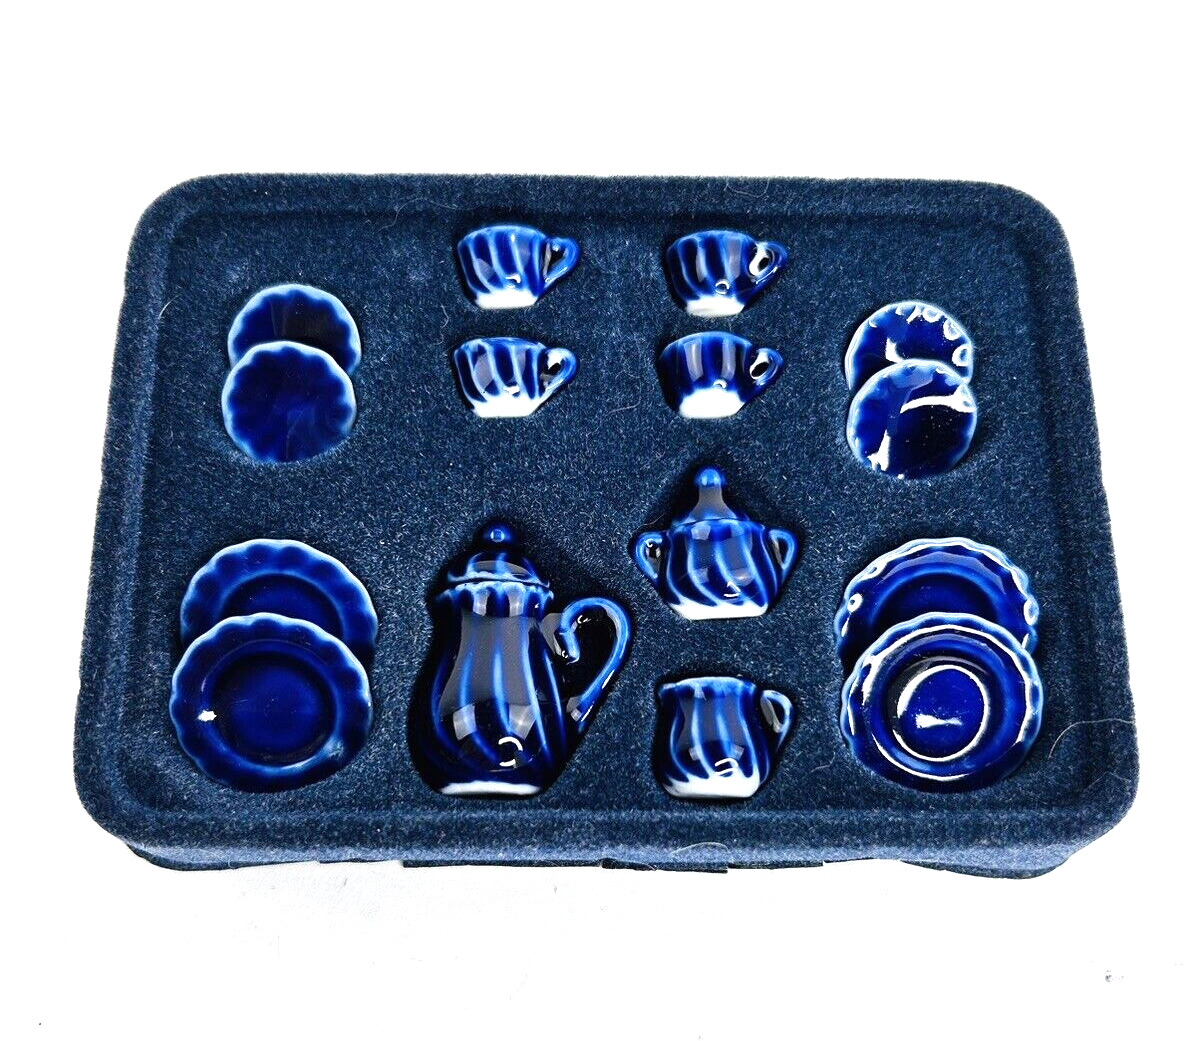 Dollhouse Miniature Accessories Dinner Set 15-Pc. Blue Porcelain Ceramic 1:12